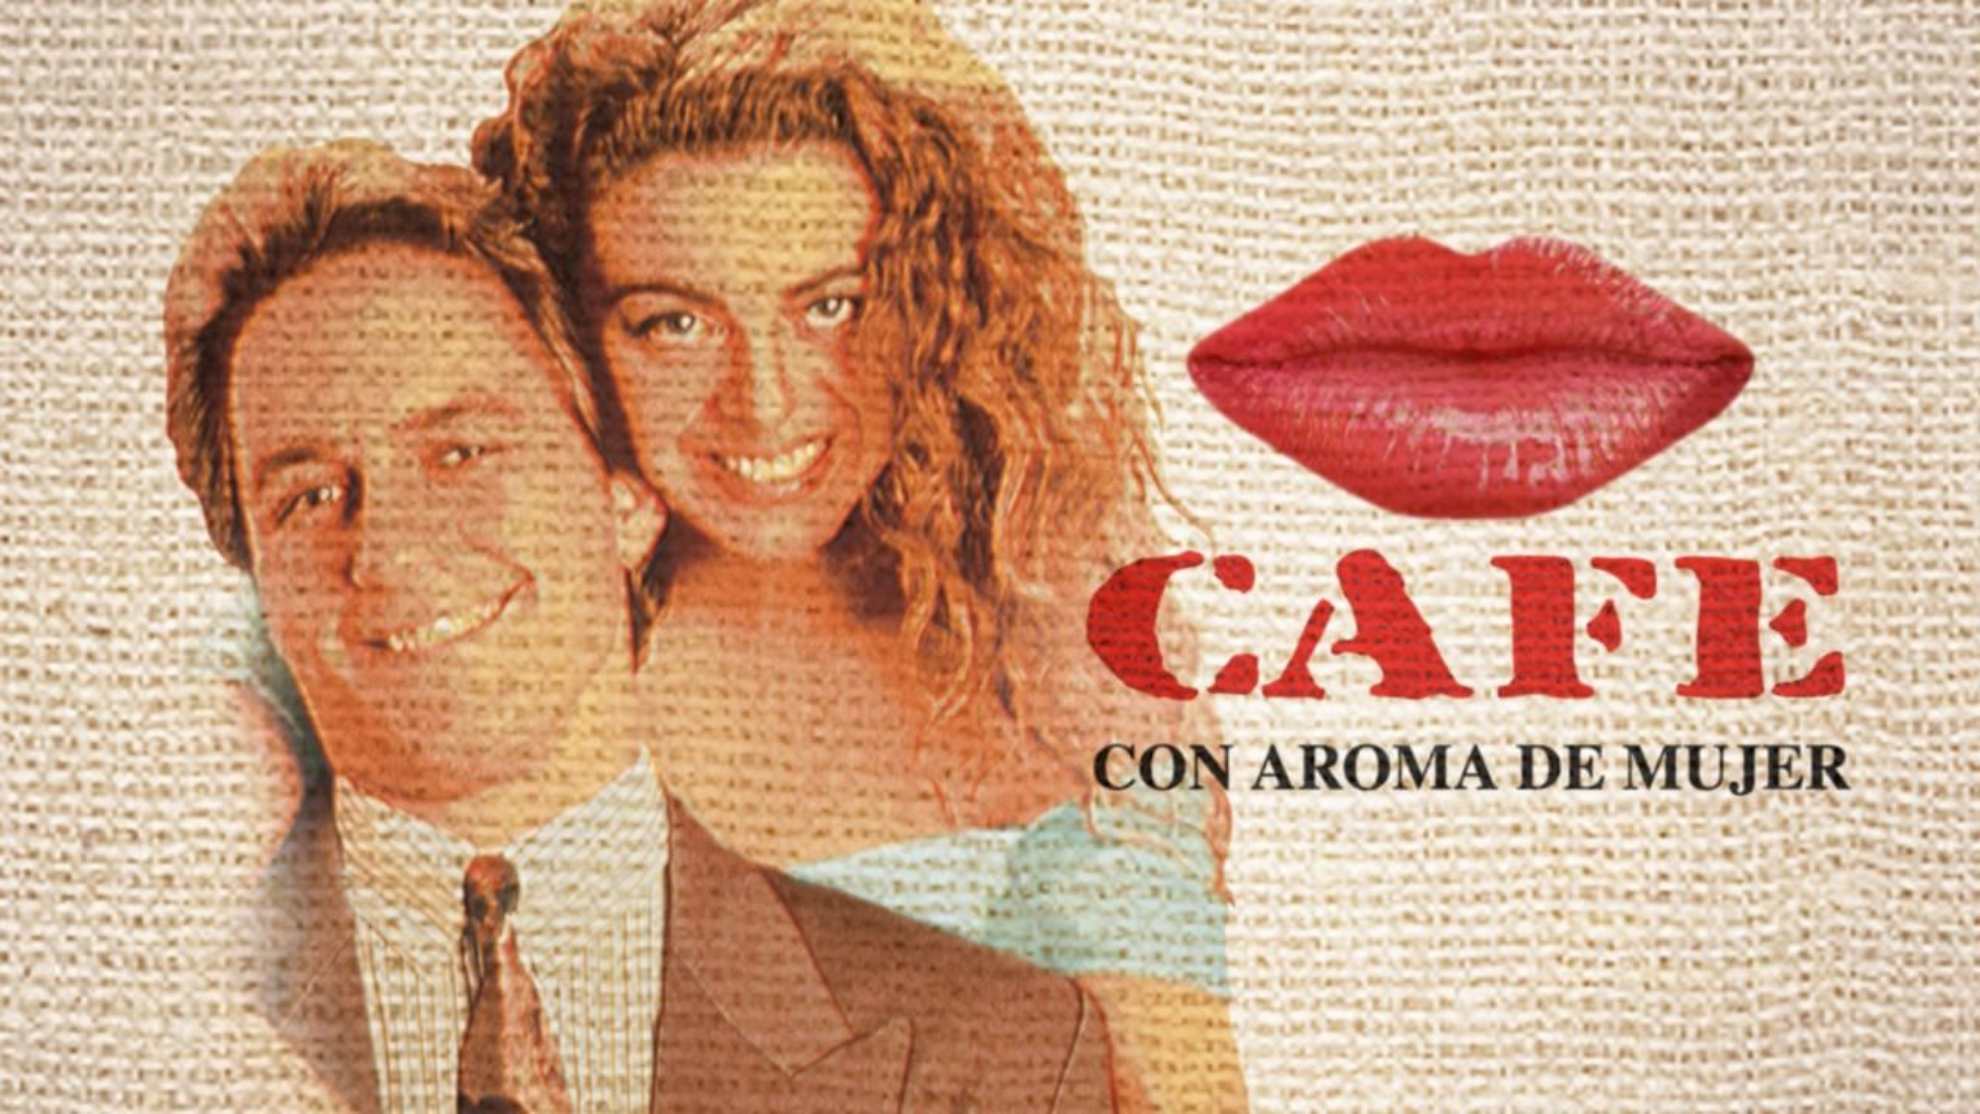  ‘Café con aroma de mujer’ tiene a Colombia  con los pelos de punta como en el año  1994